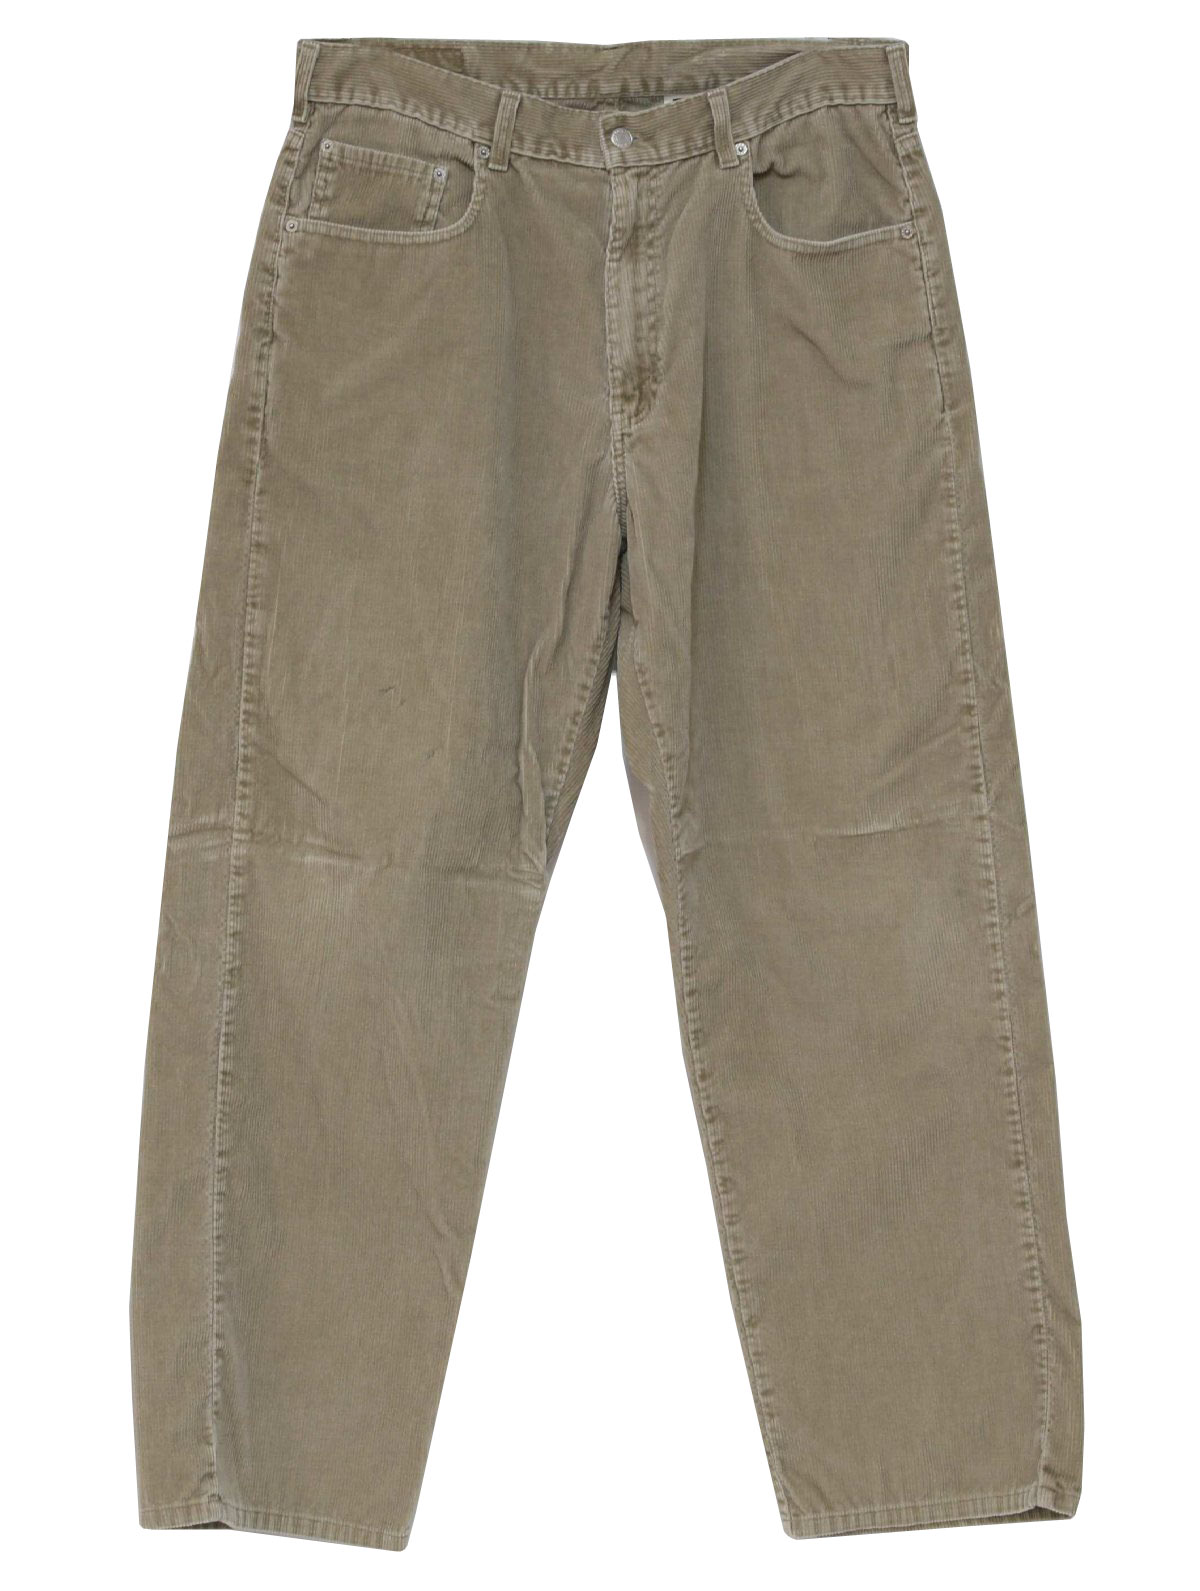 90's Vintage Pants: 90s -Levis 559- Mens khaki cotton polyester ...